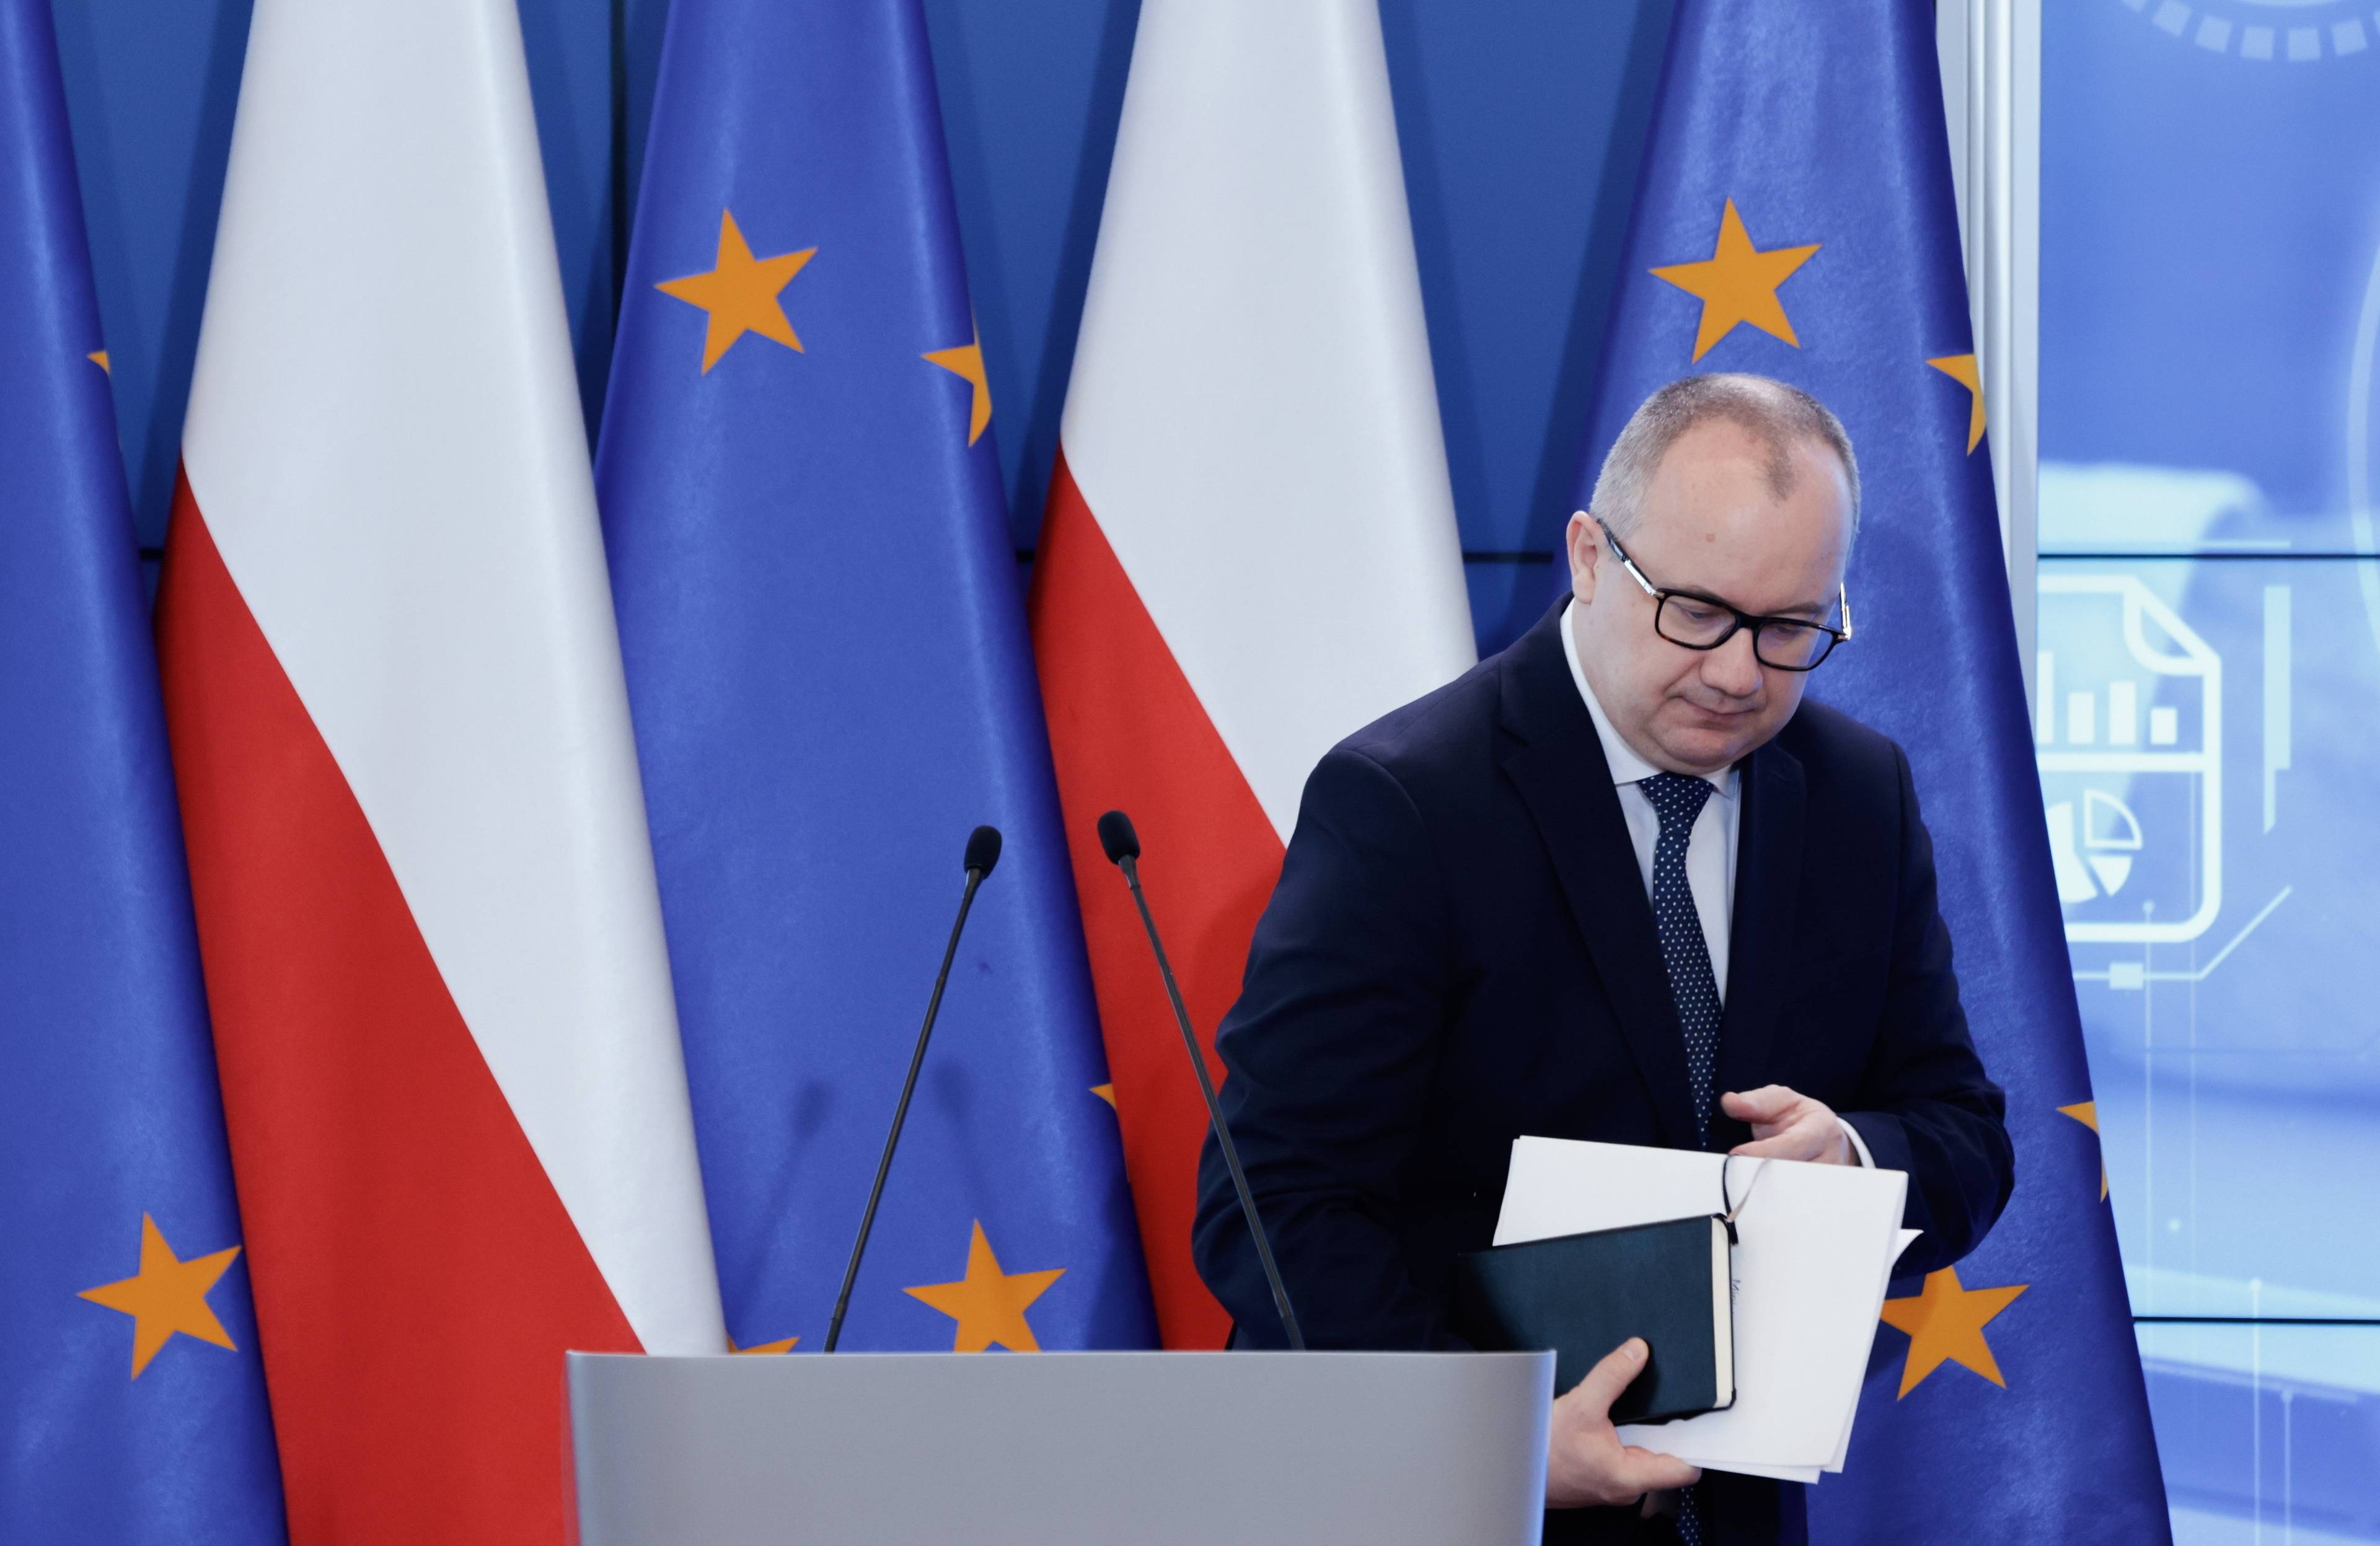 Adam Bodnar schodzi z mównicy, w ręce trzyma notes i papiery, za nim flagi Polski i UE